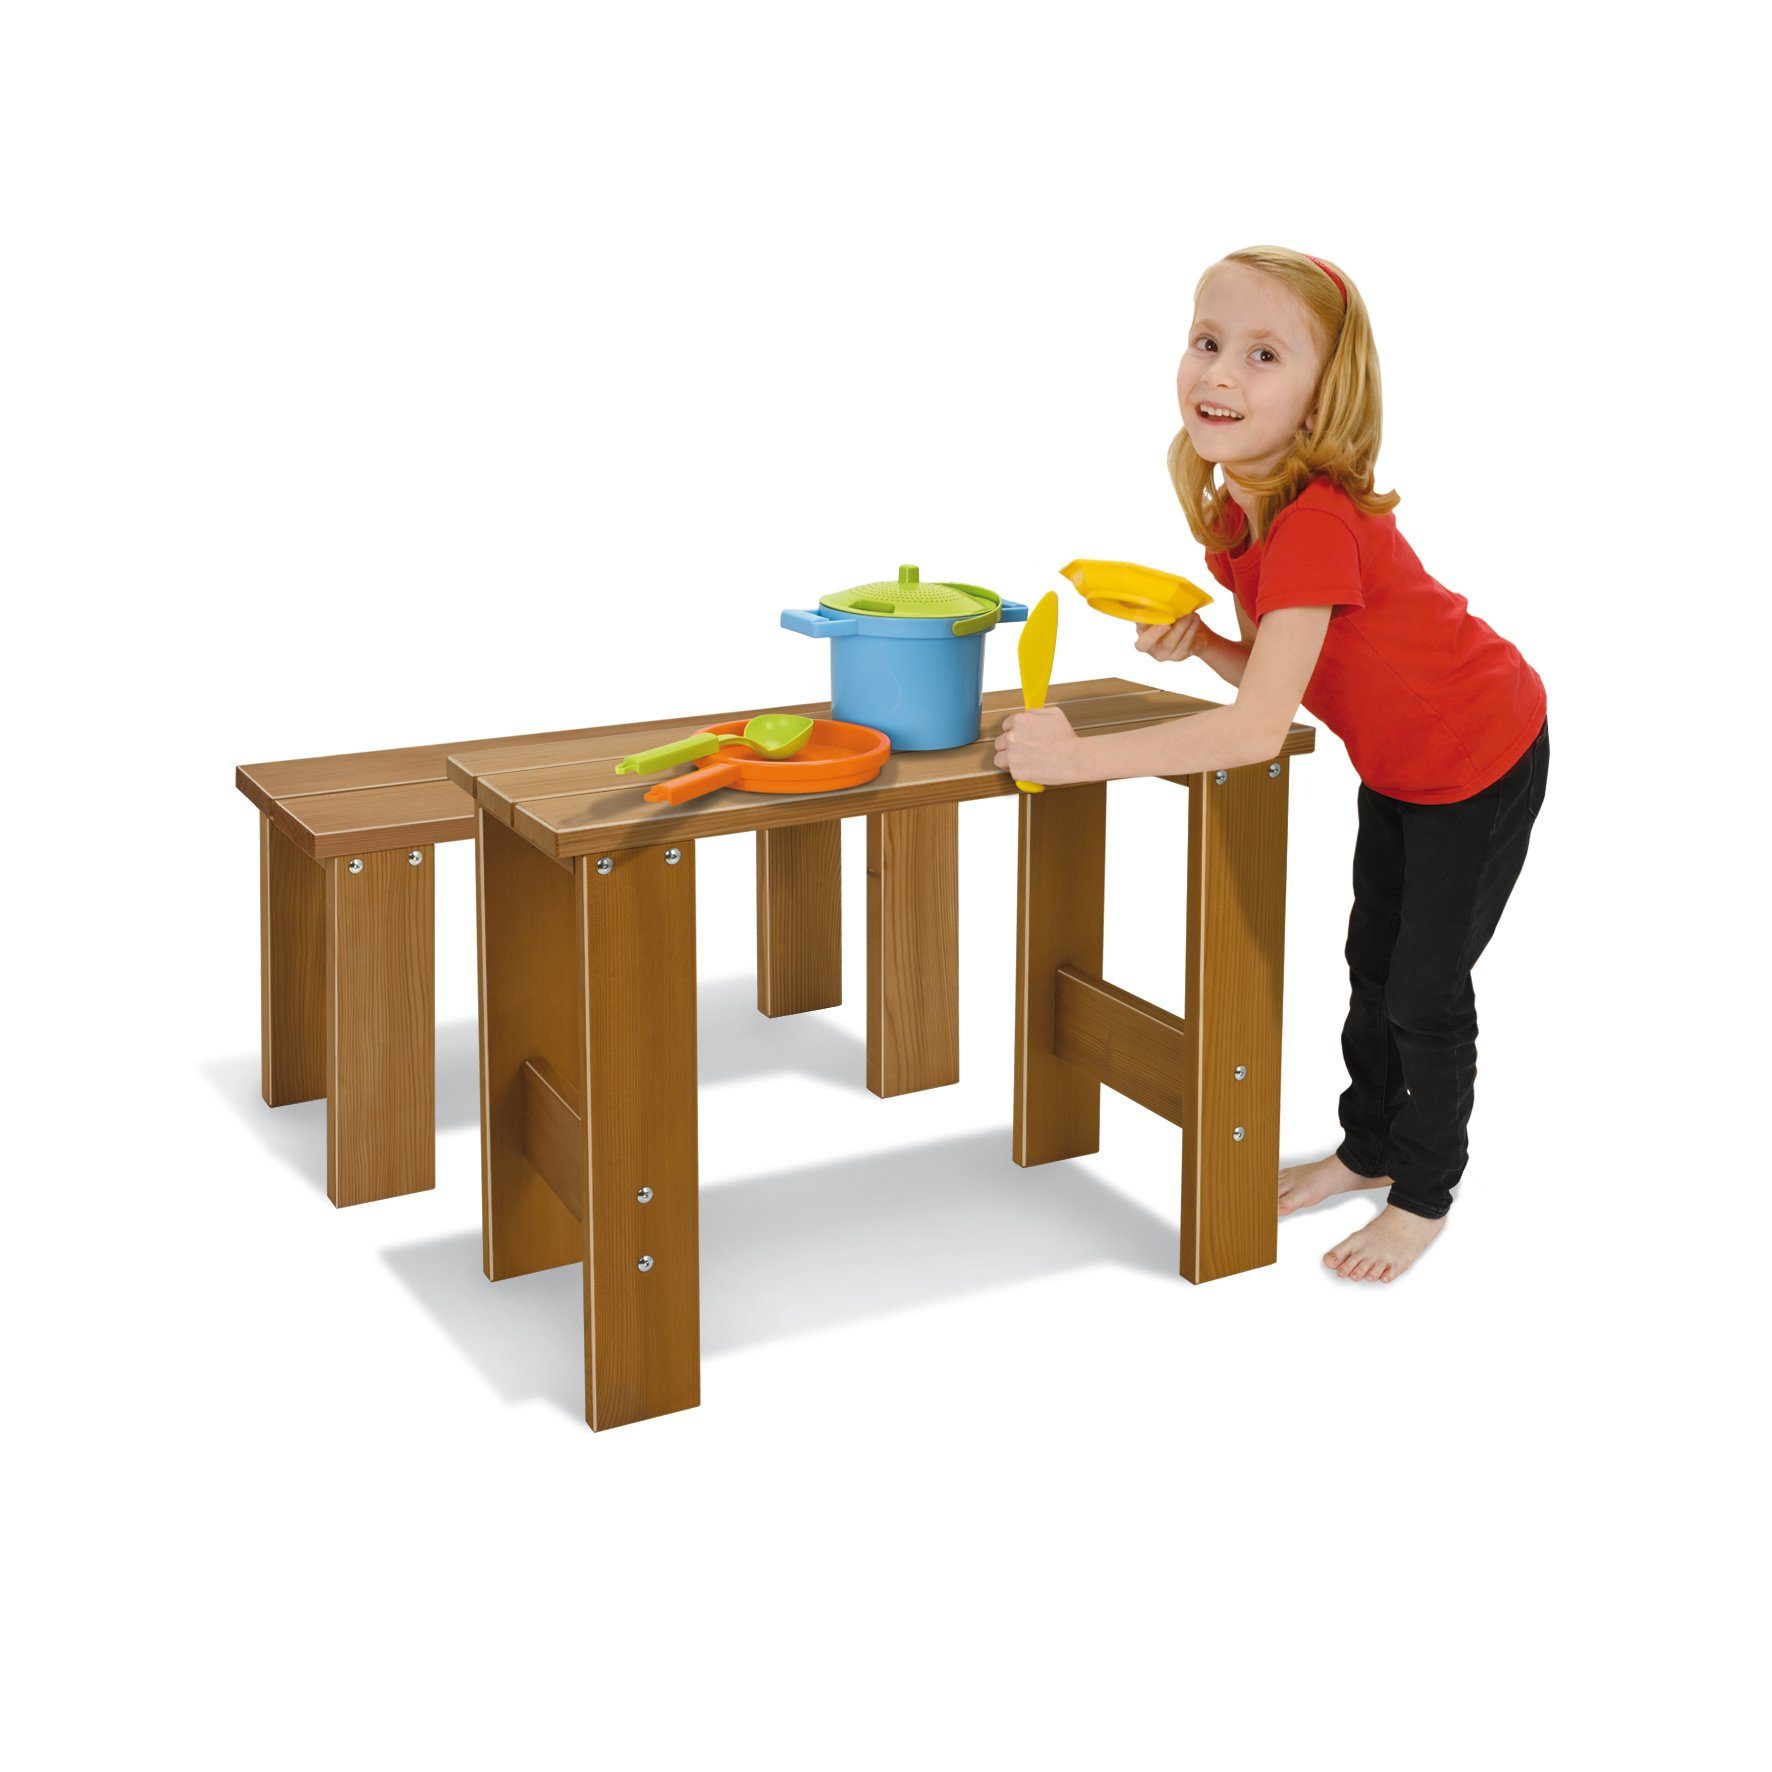 x 75 cm Nemmer Kindertisch Kindertisch aus Thermoholz cm 37 x cm 56 Tisch Outdoor Nemmer -